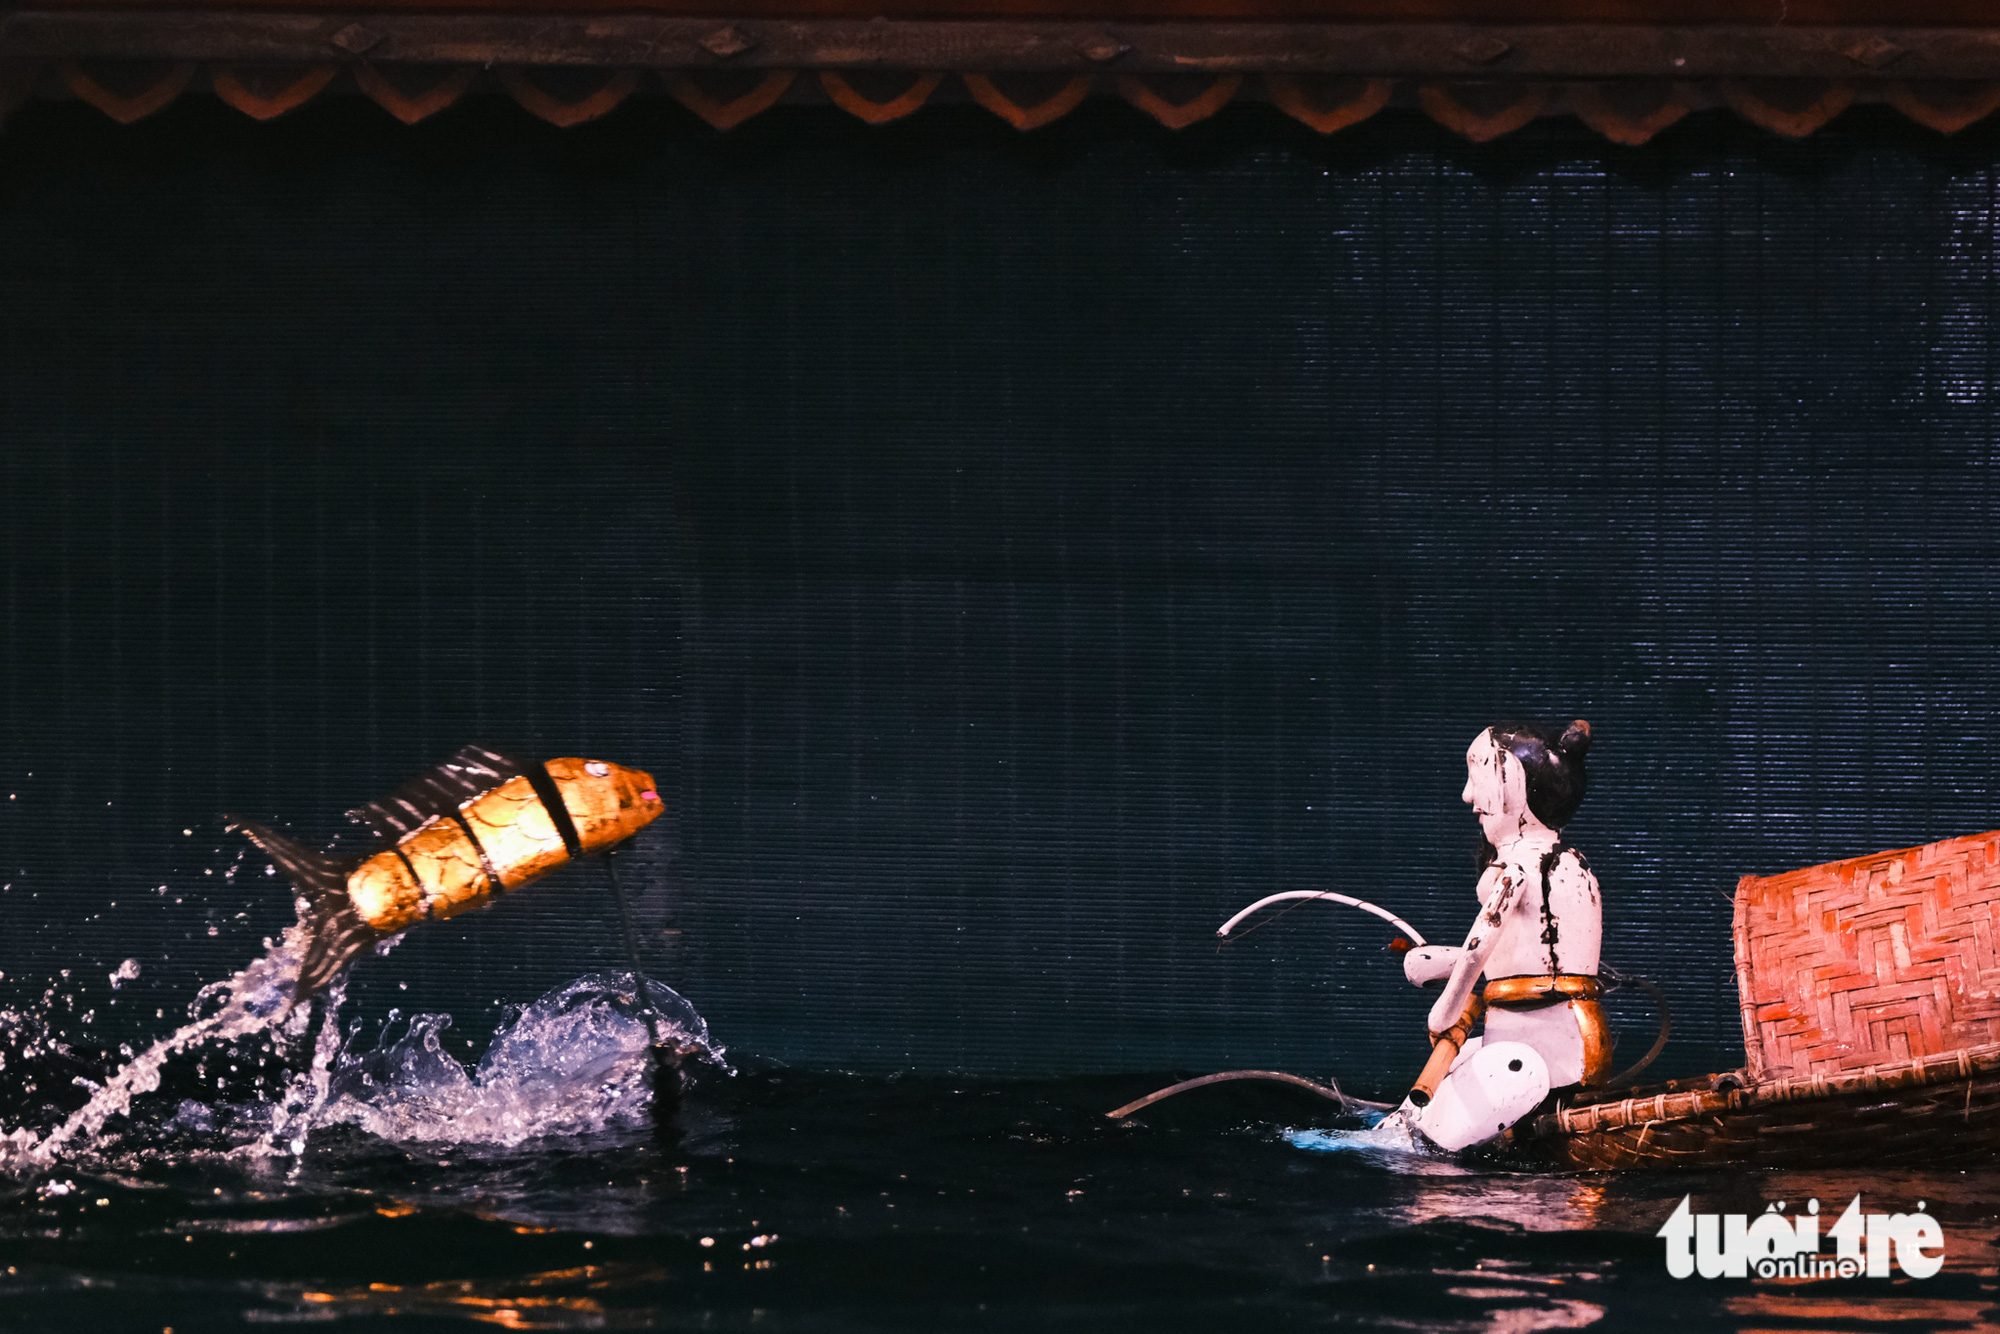 Múa rối nước là đặc sản văn hóa ở Hà Nội với khách nước ngoài - Ảnh 6.